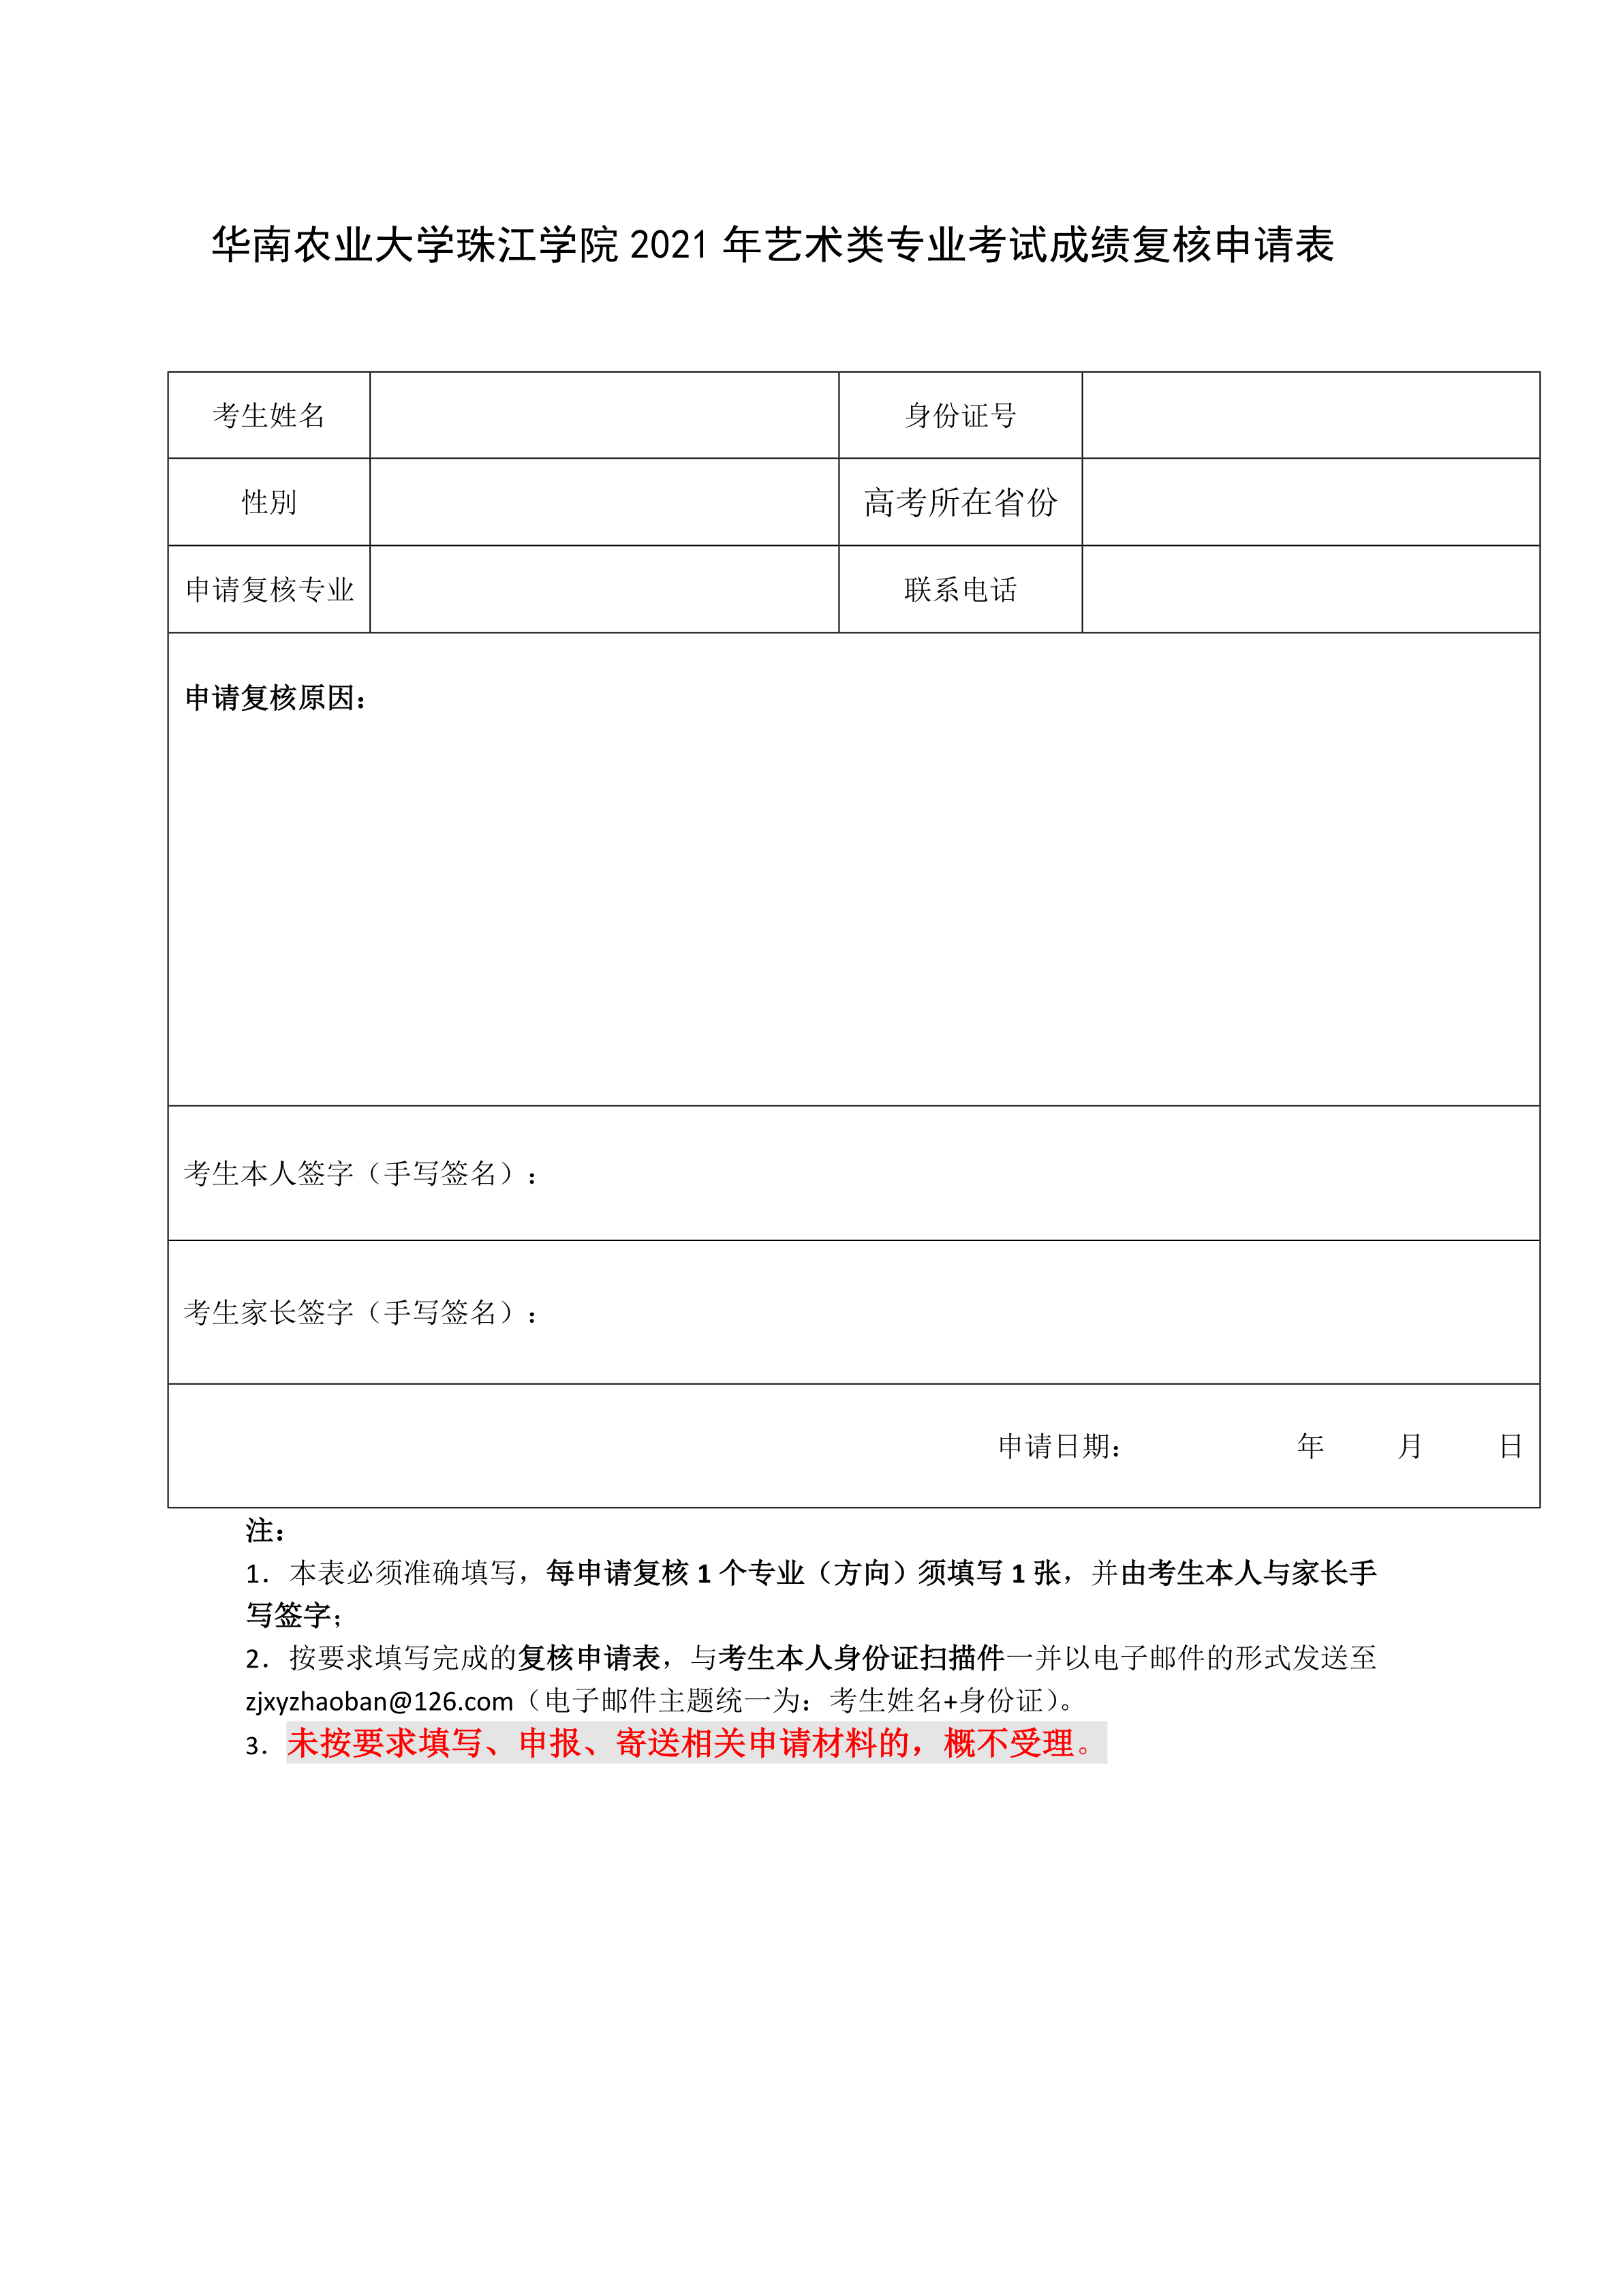 华南农业大学珠江学院校考成绩复核申请表_1.png